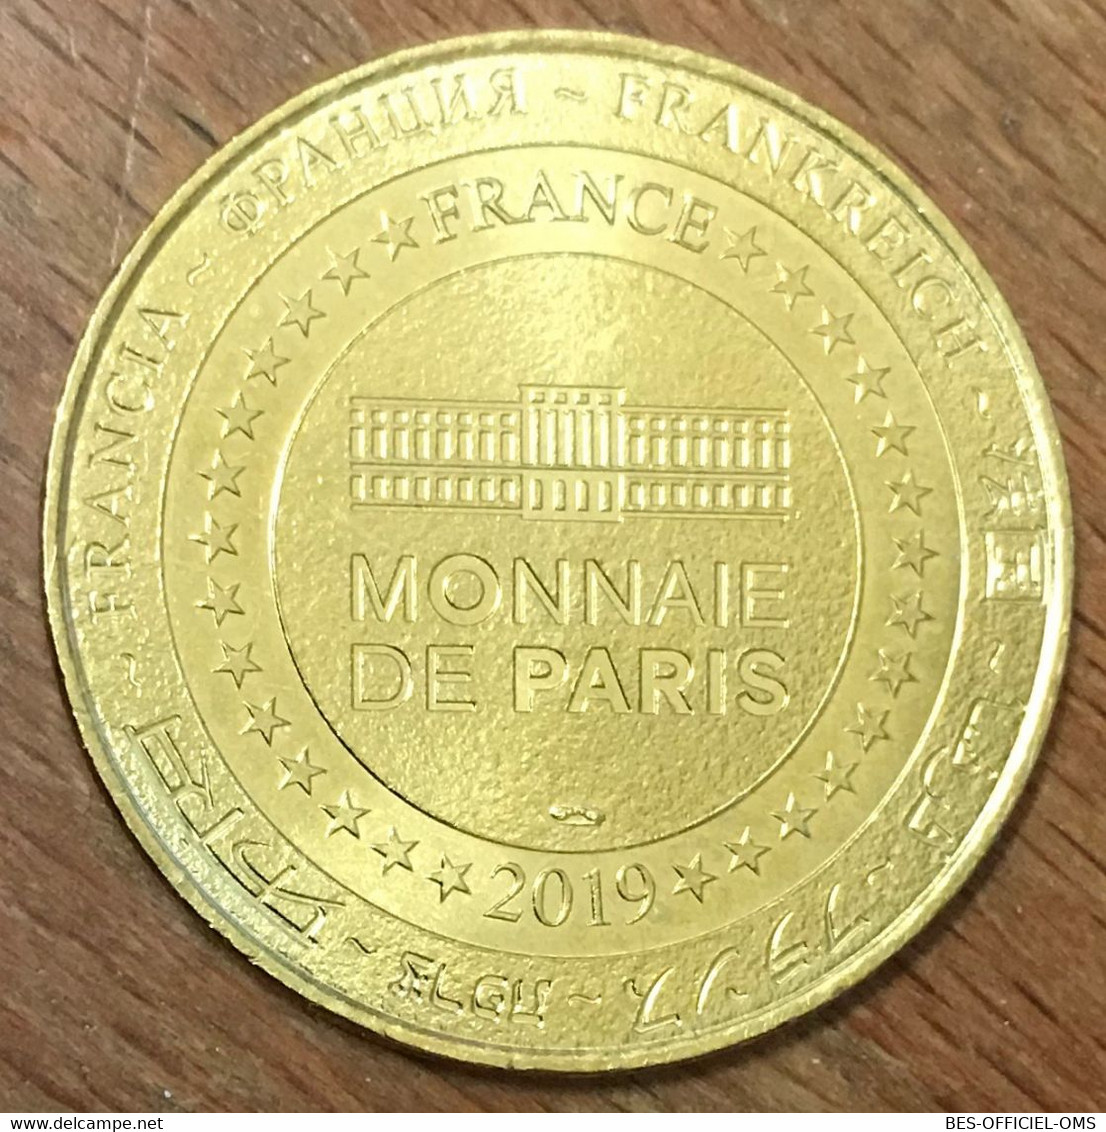 77 PROVINS CITÉ MÉDIÉVALE MDP 2019 MÉDAILLE SOUVENIR MONNAIE DE PARIS JETON TOURISTIQUE MEDALS COINS TOKENS - 2019